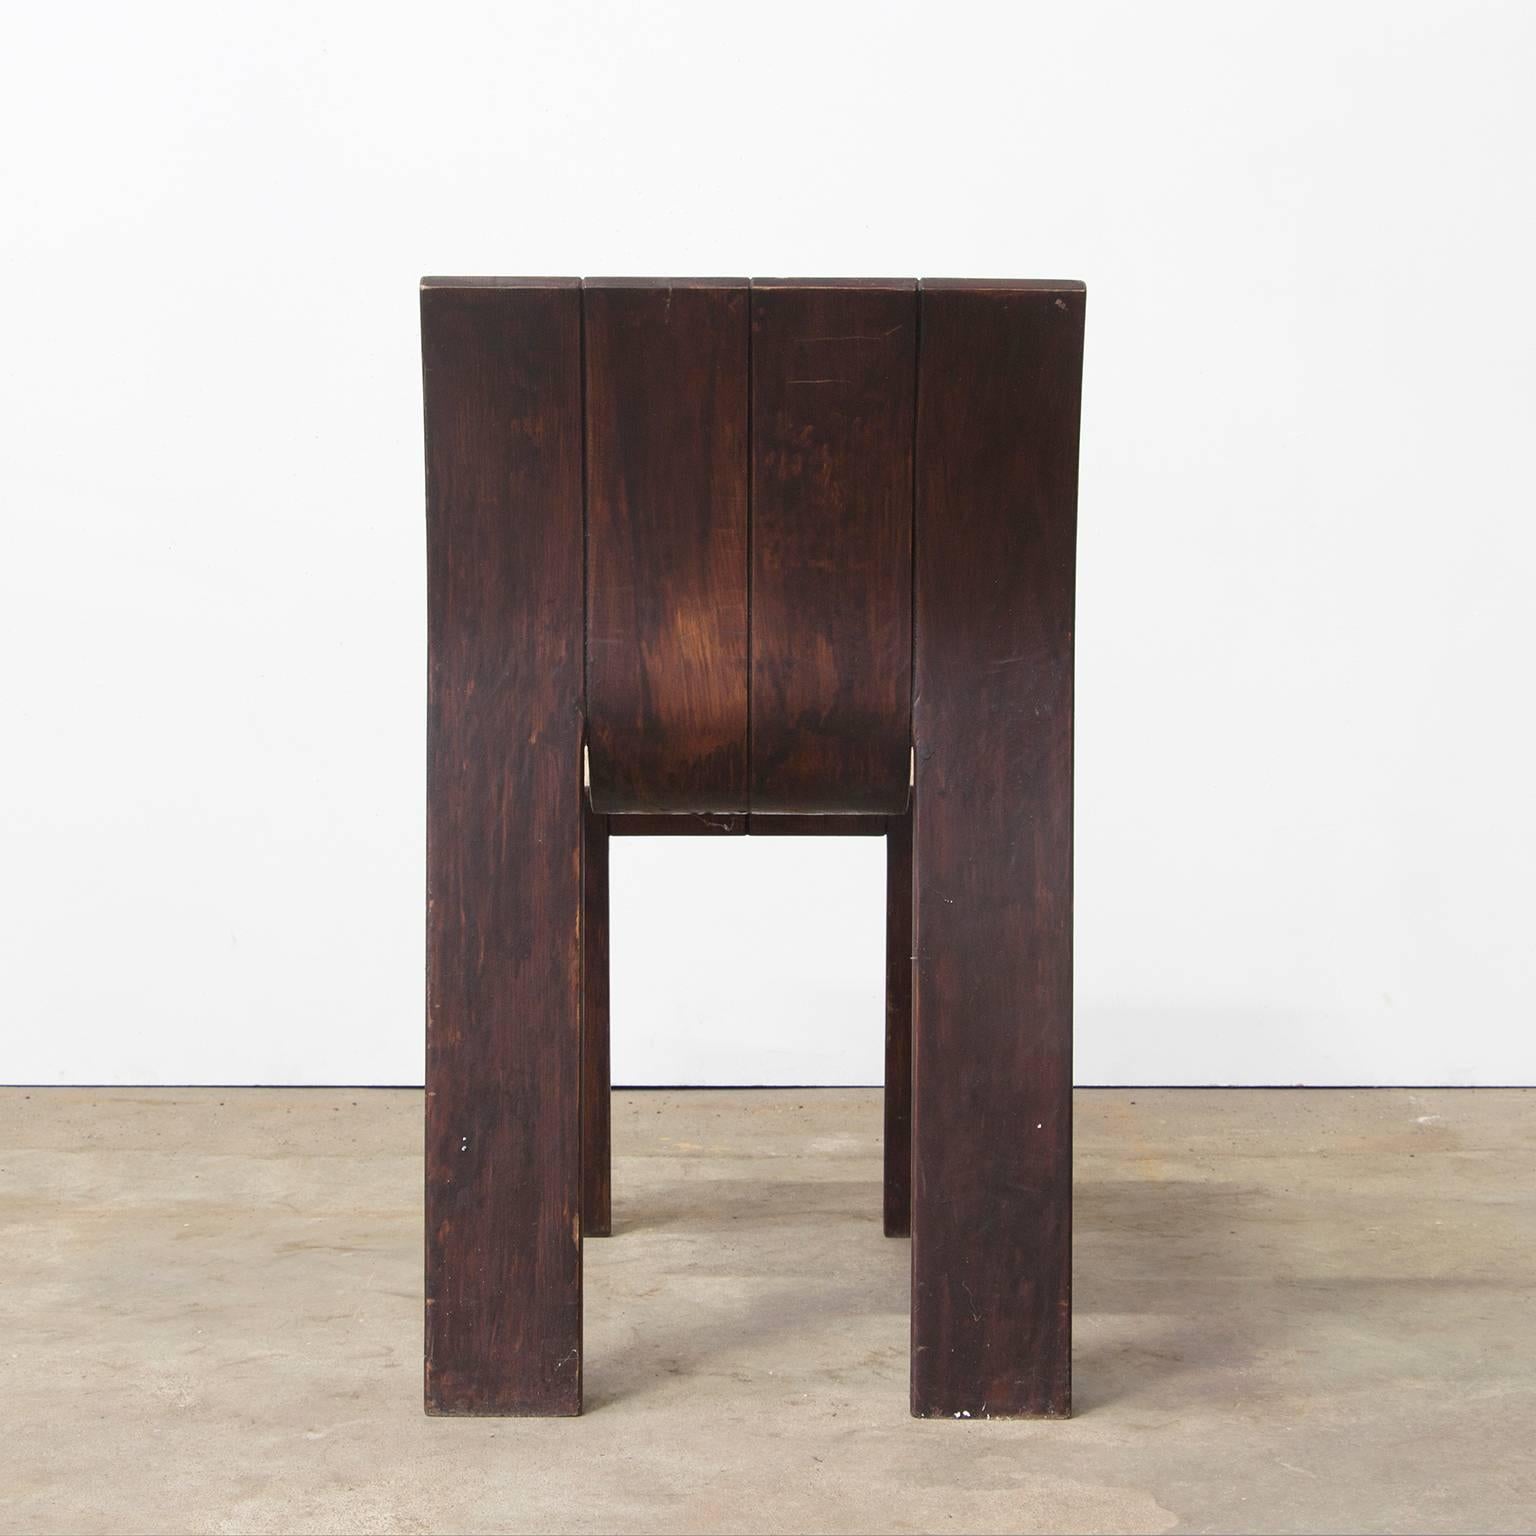 Dutch 1974, Gijs Bakker, Castelijn, Partly Varnished Stackable Bended Wood Strip Chair